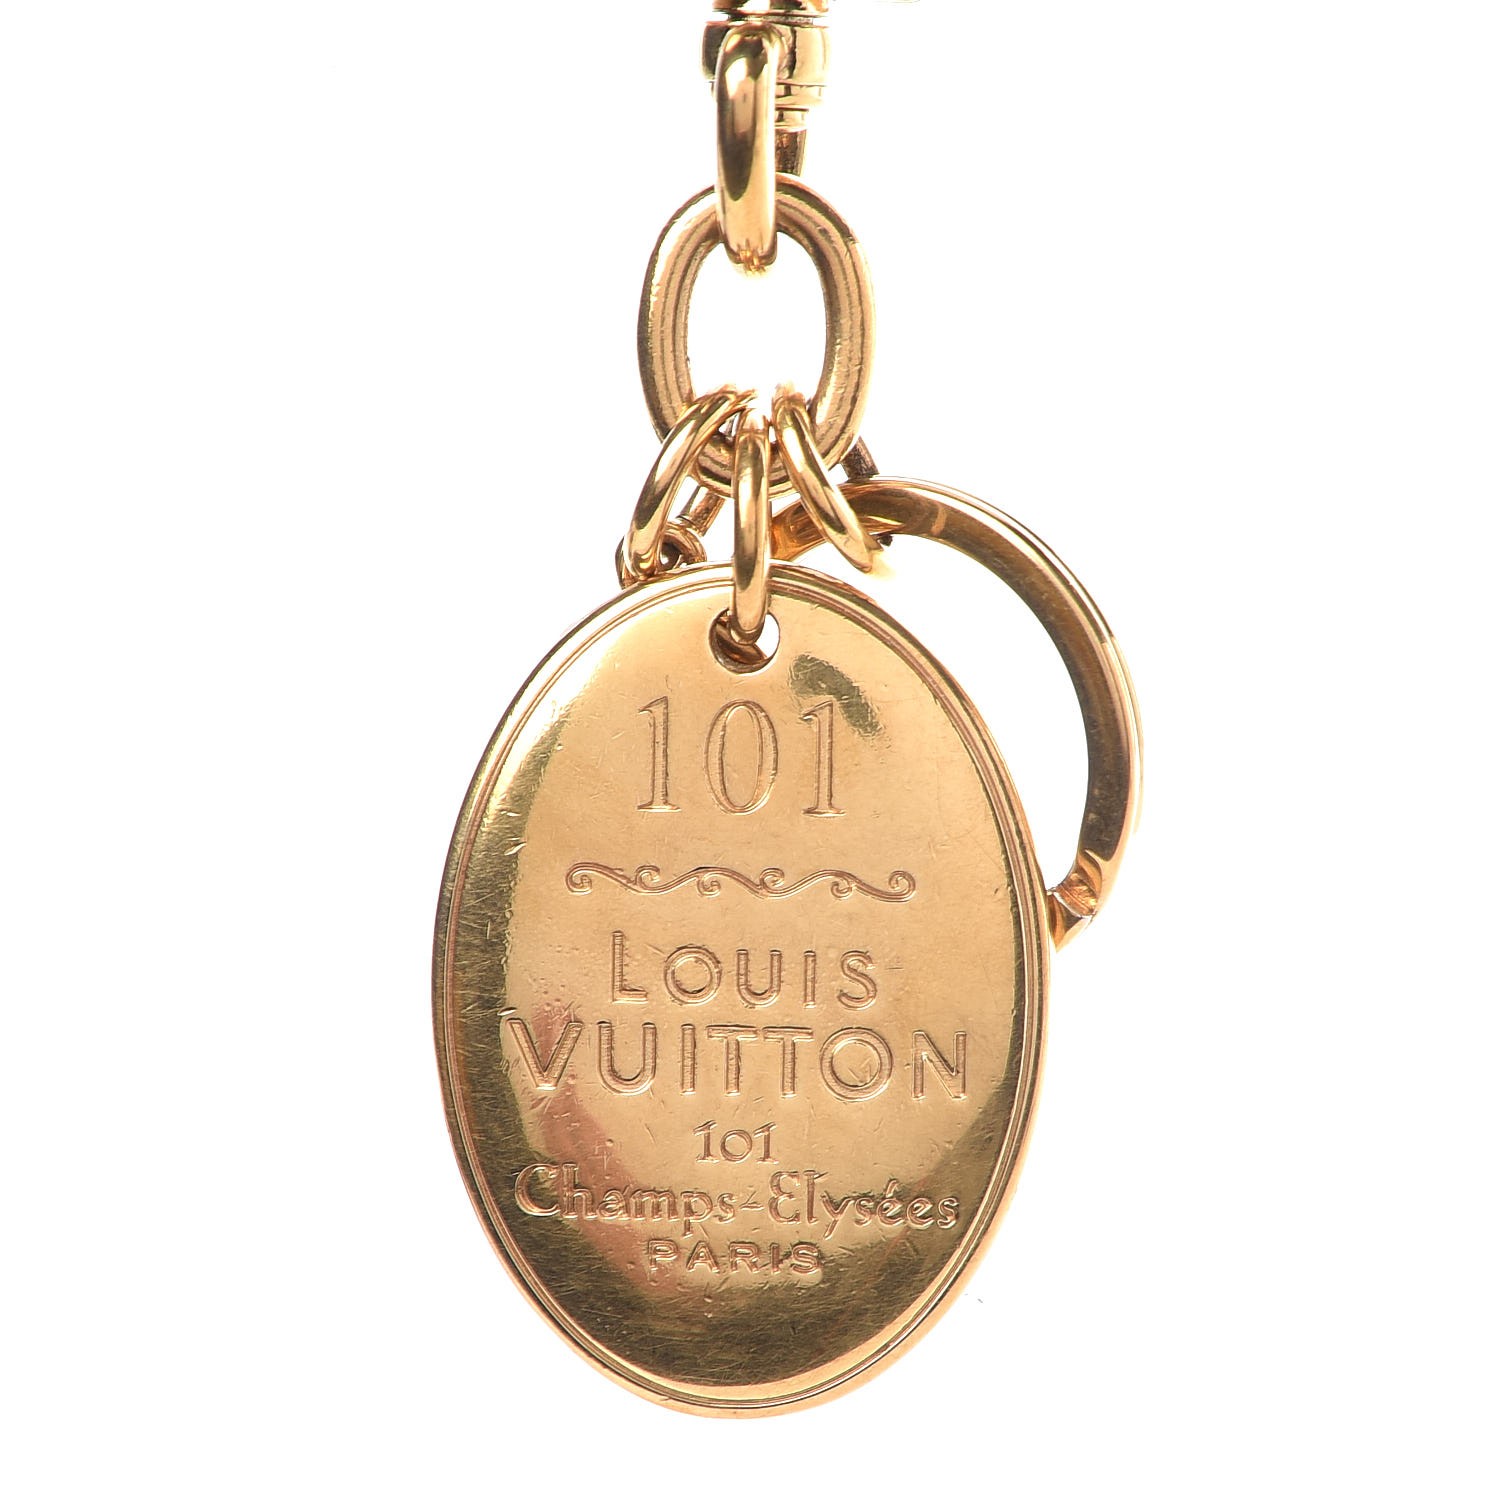 LOUIS VUITTON 101 Champs Elysees Maison Key Charm Gold 302477